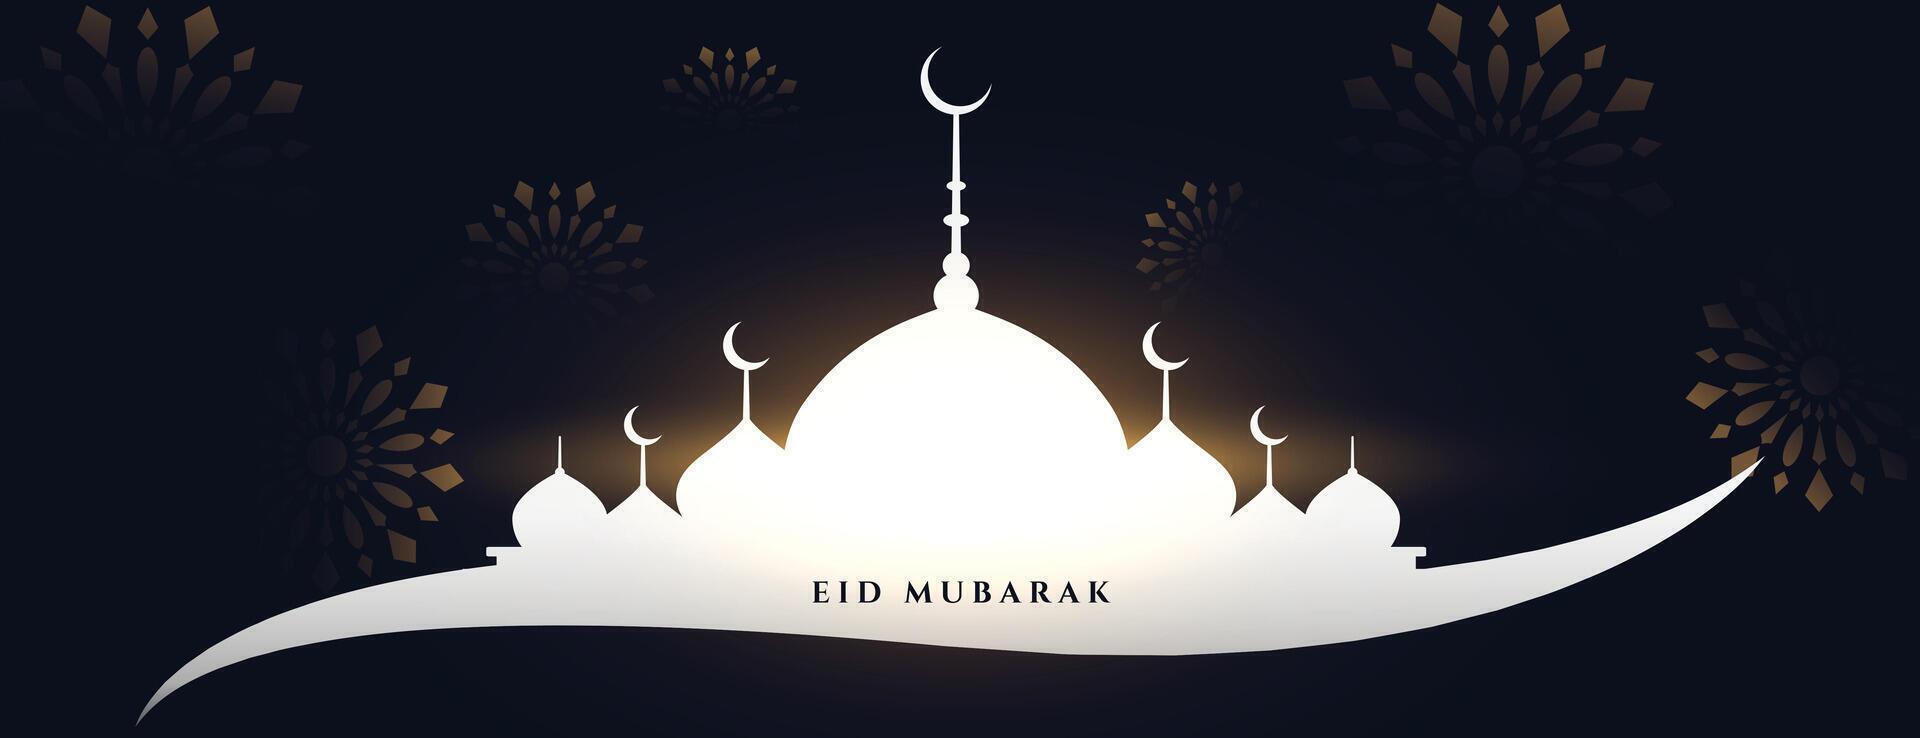 eid mubarak mosquée salutation bannière conception vecteur